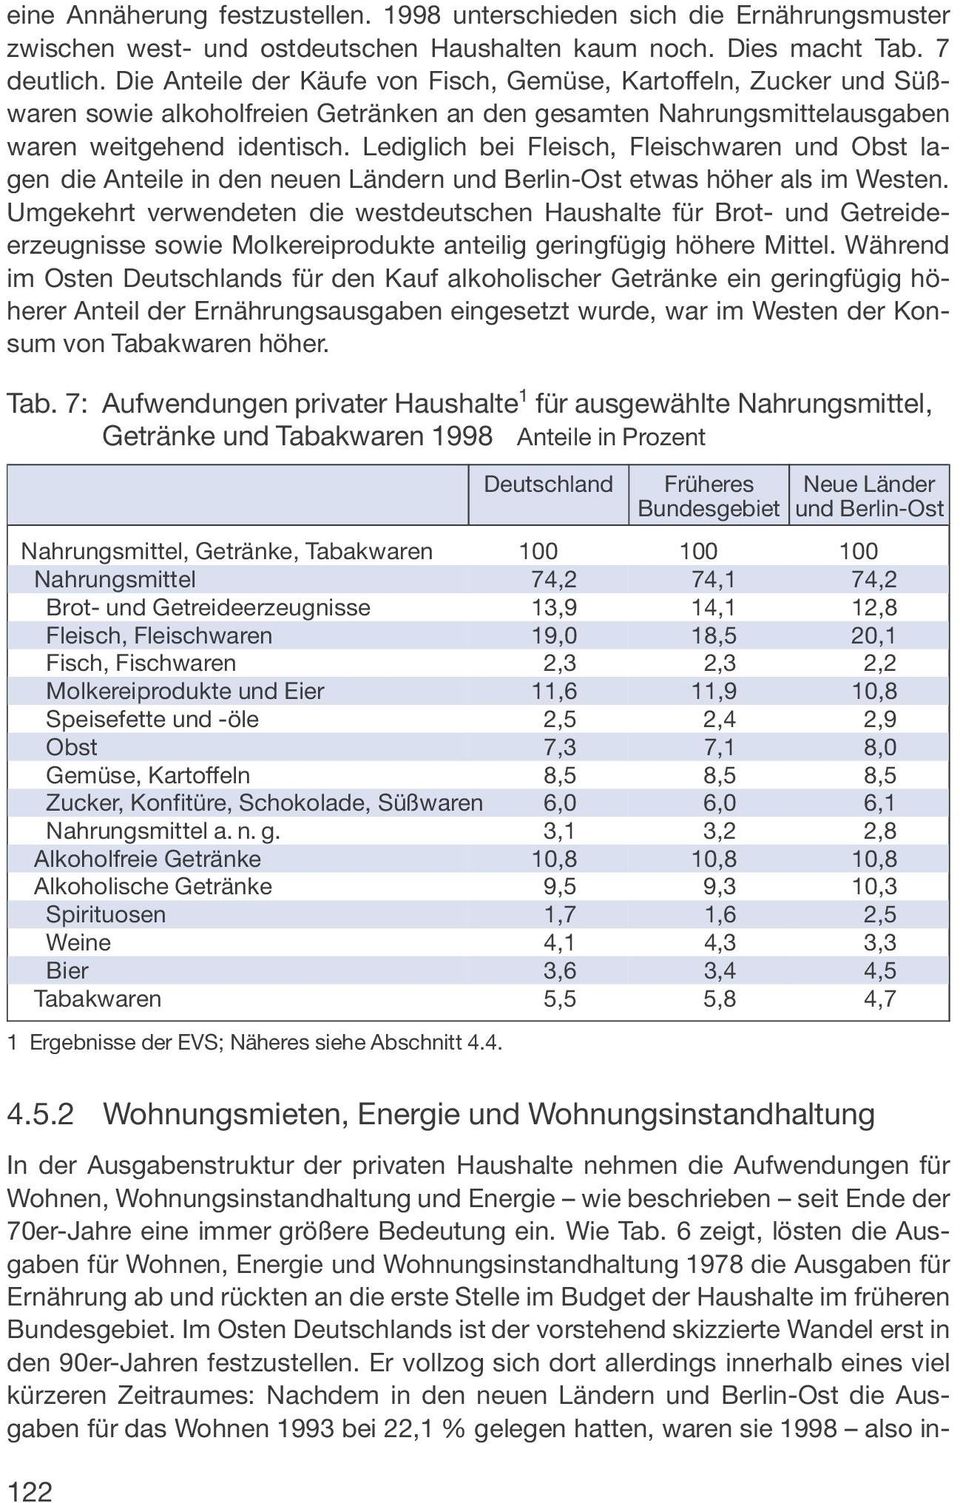 Lediglich bei Fleisch, Fleischwaren und Obst lagen die Anteile in den neuen Ländern und Berlin-Ost etwas höher als im Westen.